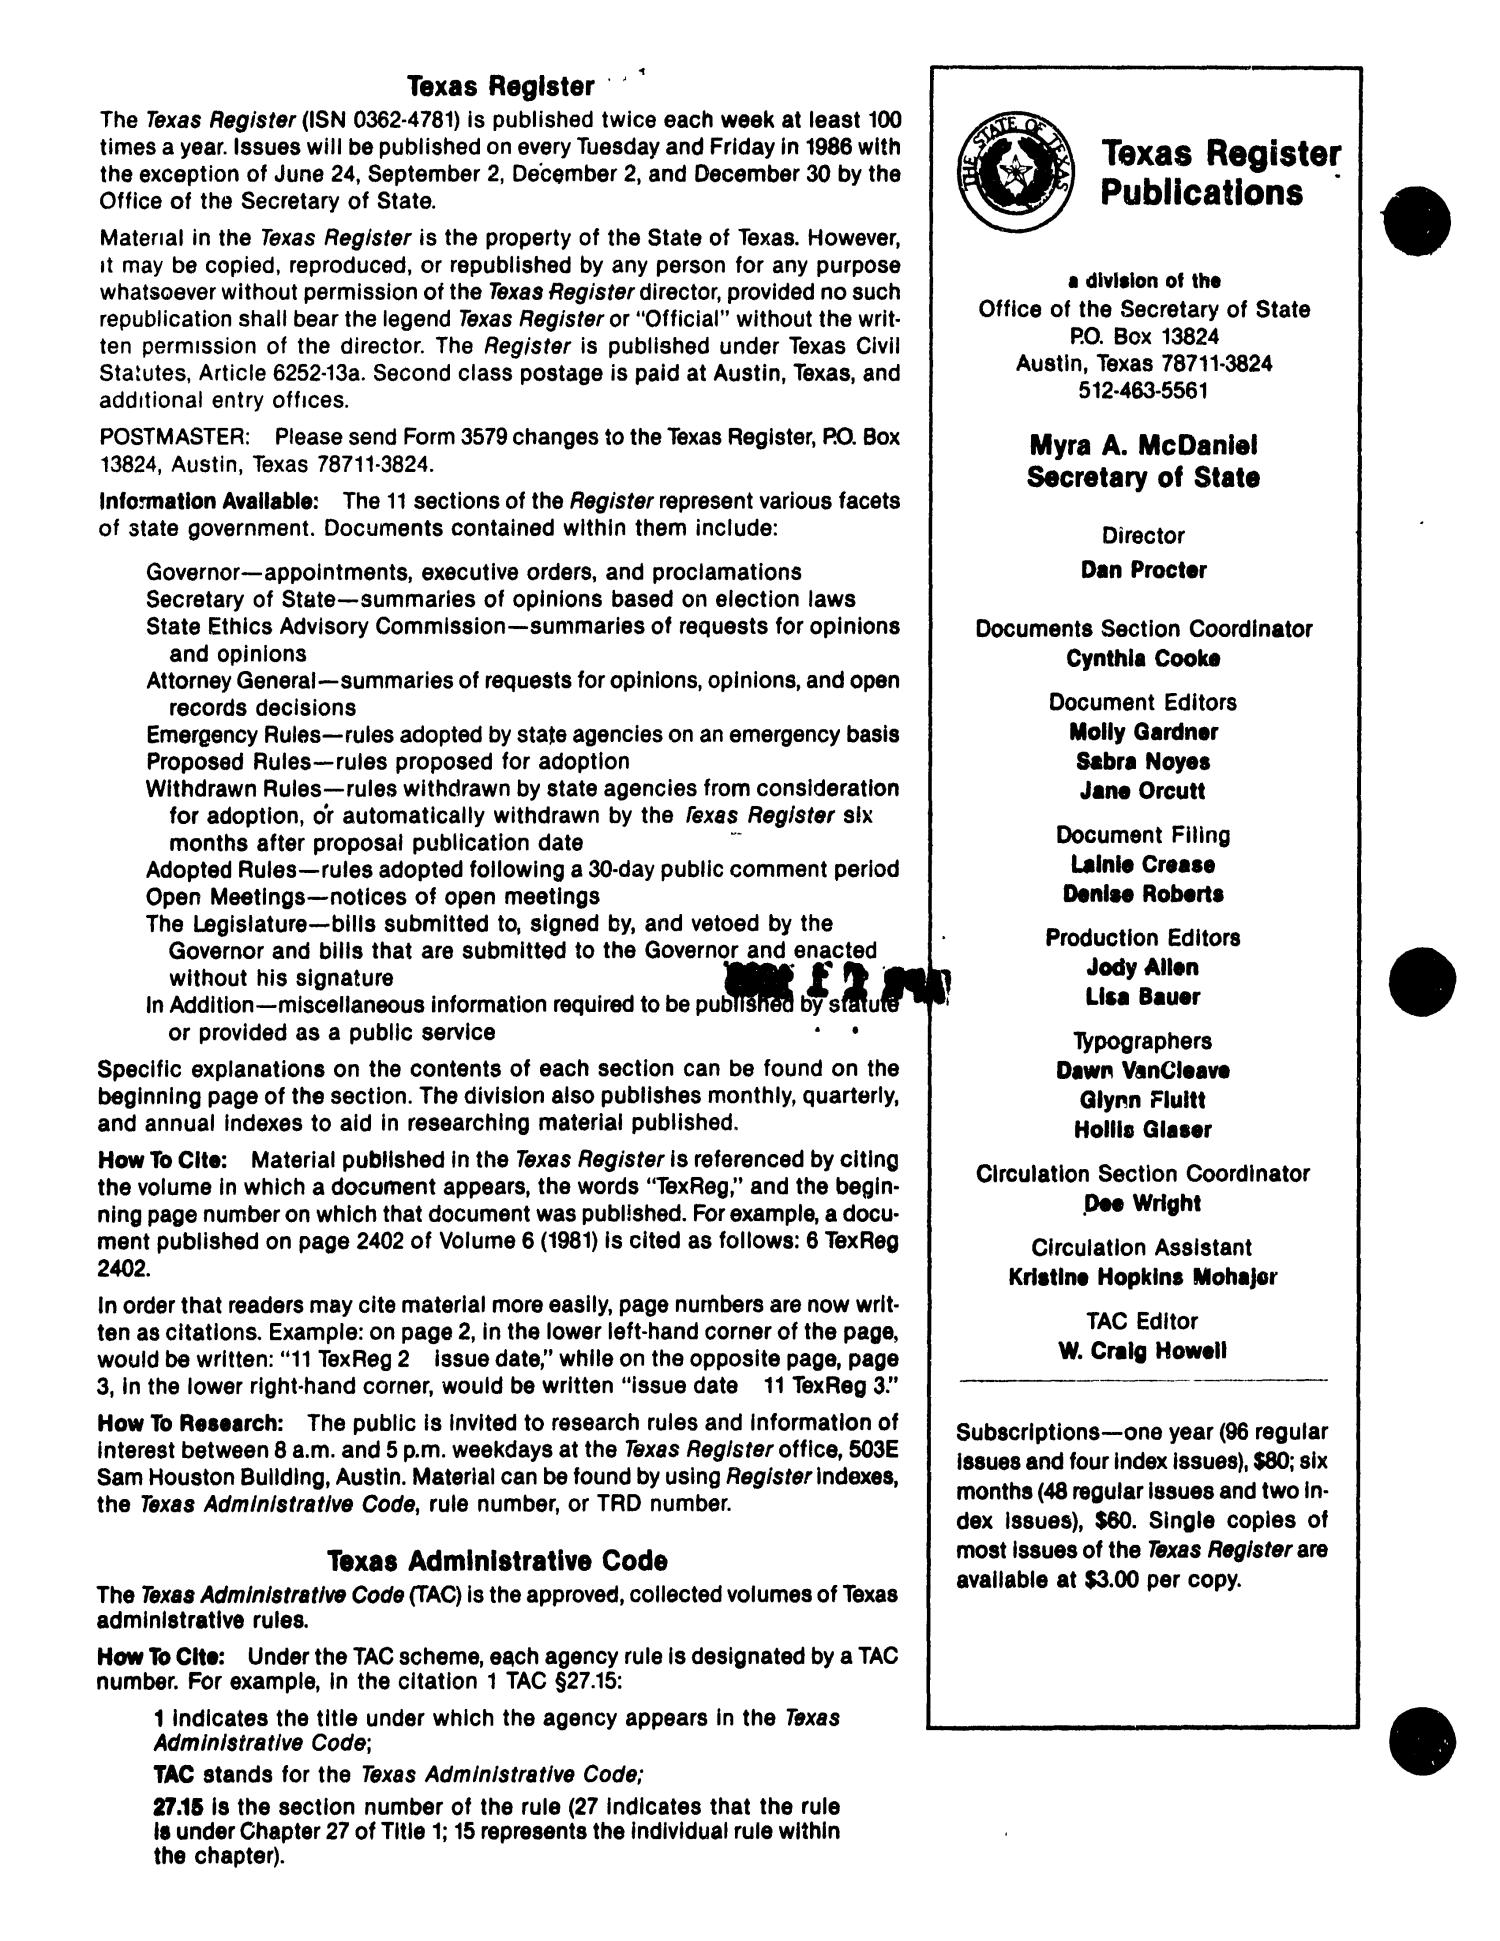 Texas Register, Volume 11, Number 28, Pages 1597-1631, April 11, 1986
                                                
                                                    1696
                                                